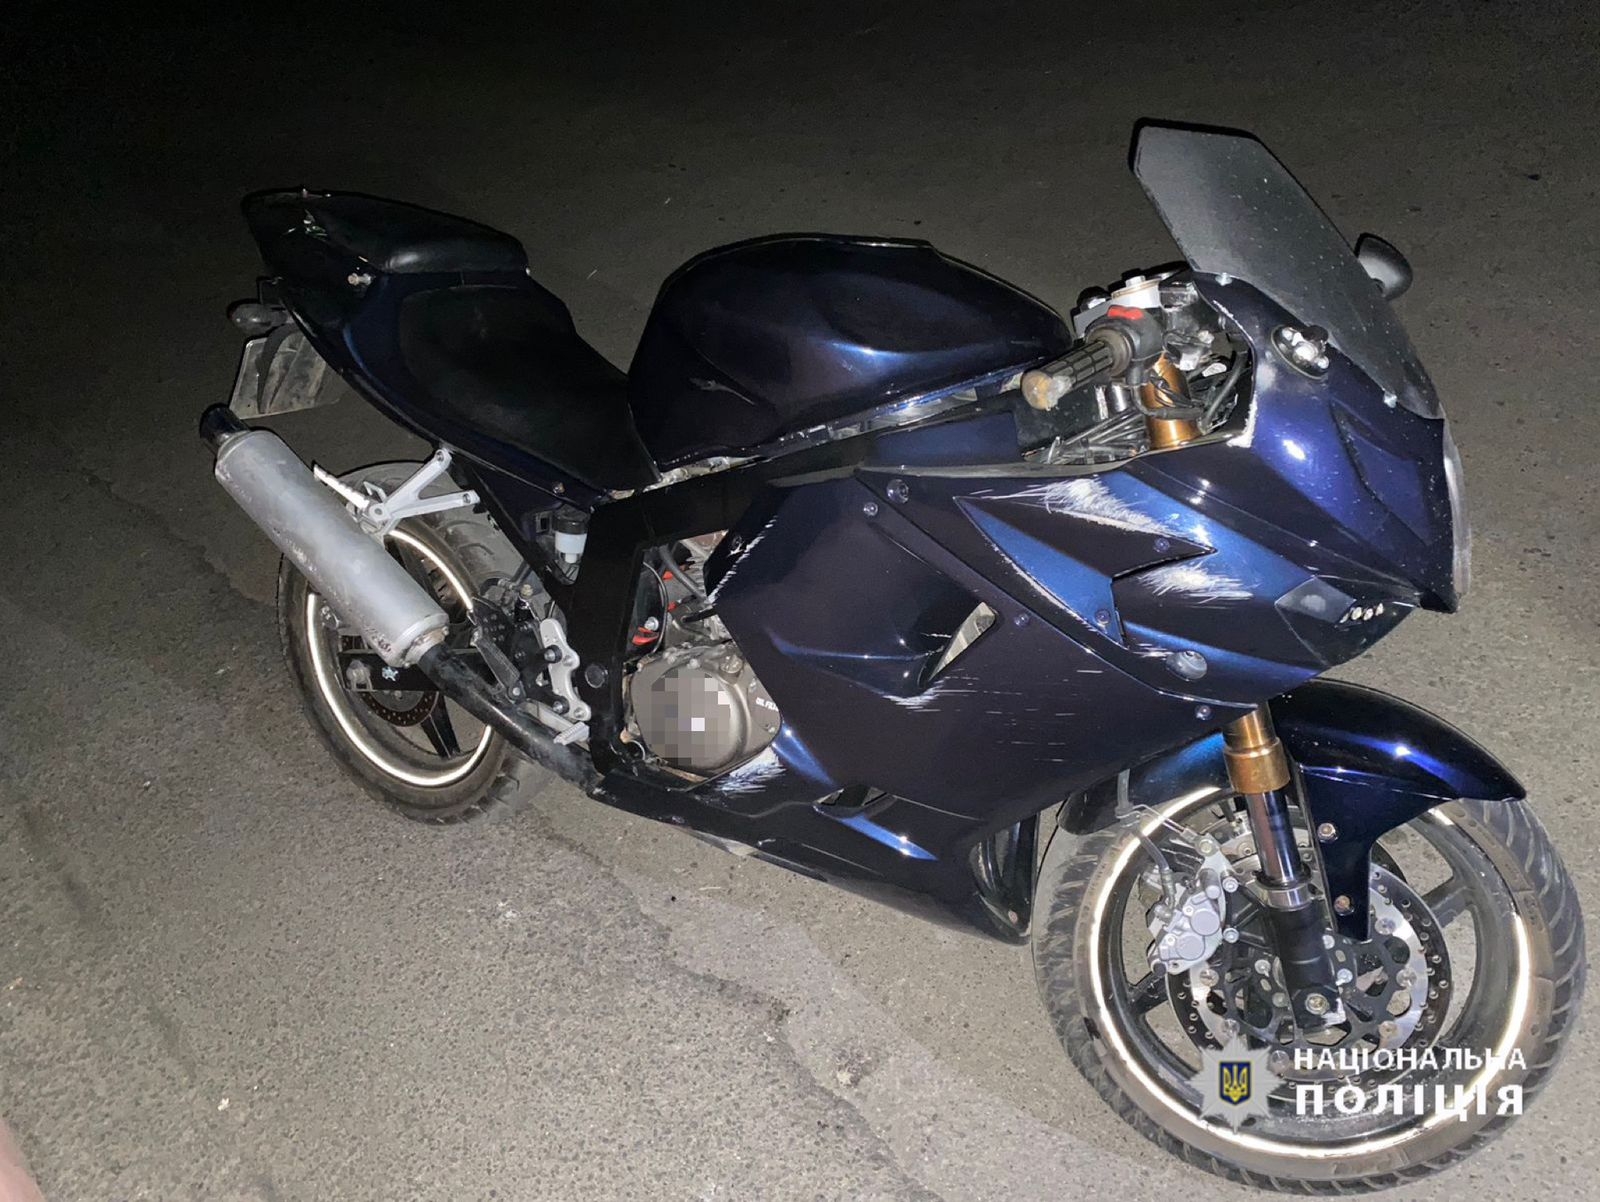 У Жмеринці п'яний водій мотоцикла перекинувся на дорозі - постраждала його пасажирка